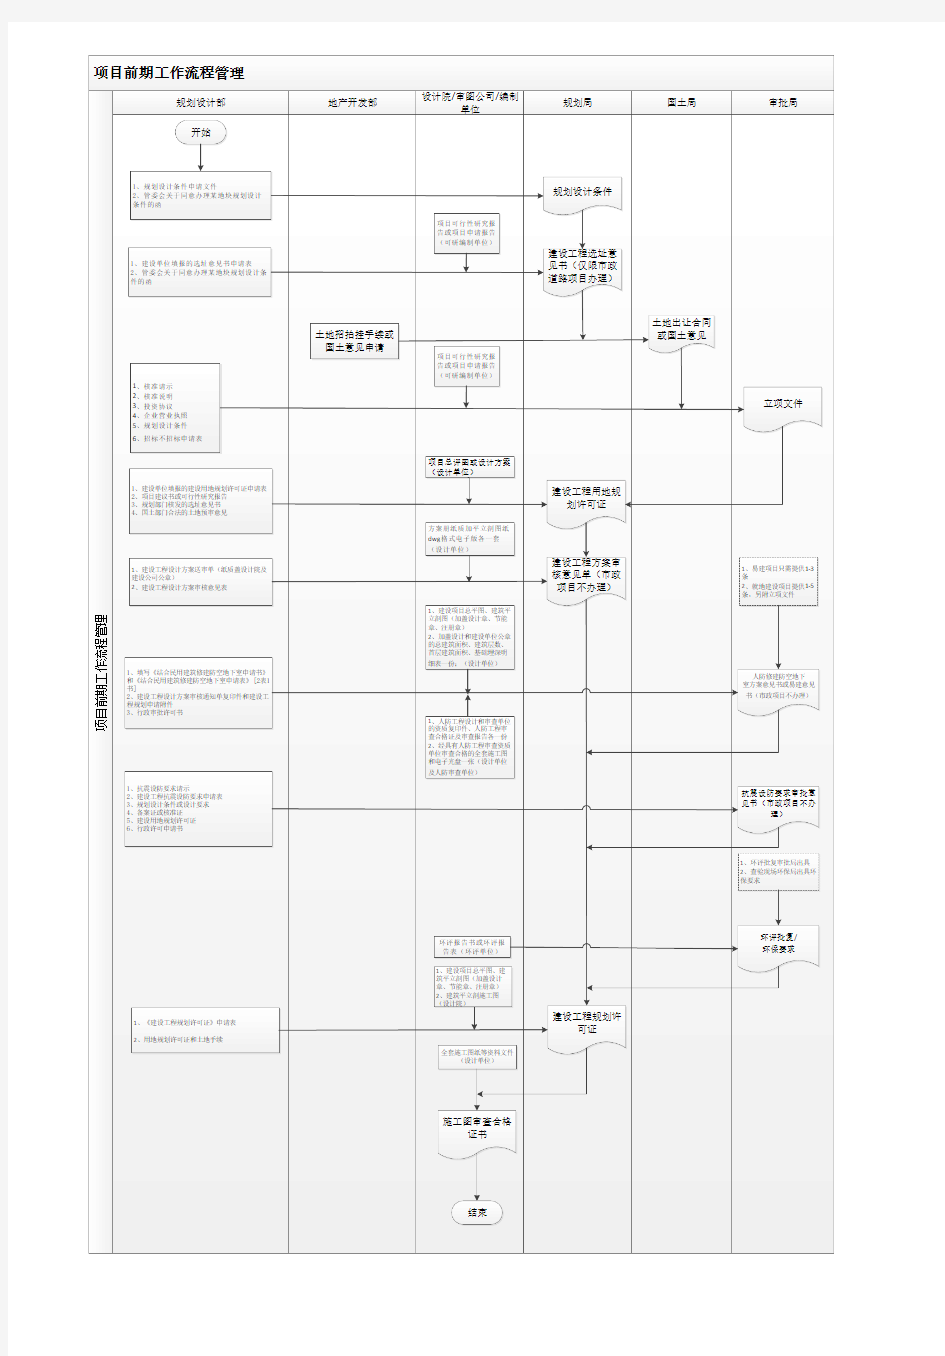 规划部设计类前期手续流程图(最终版)